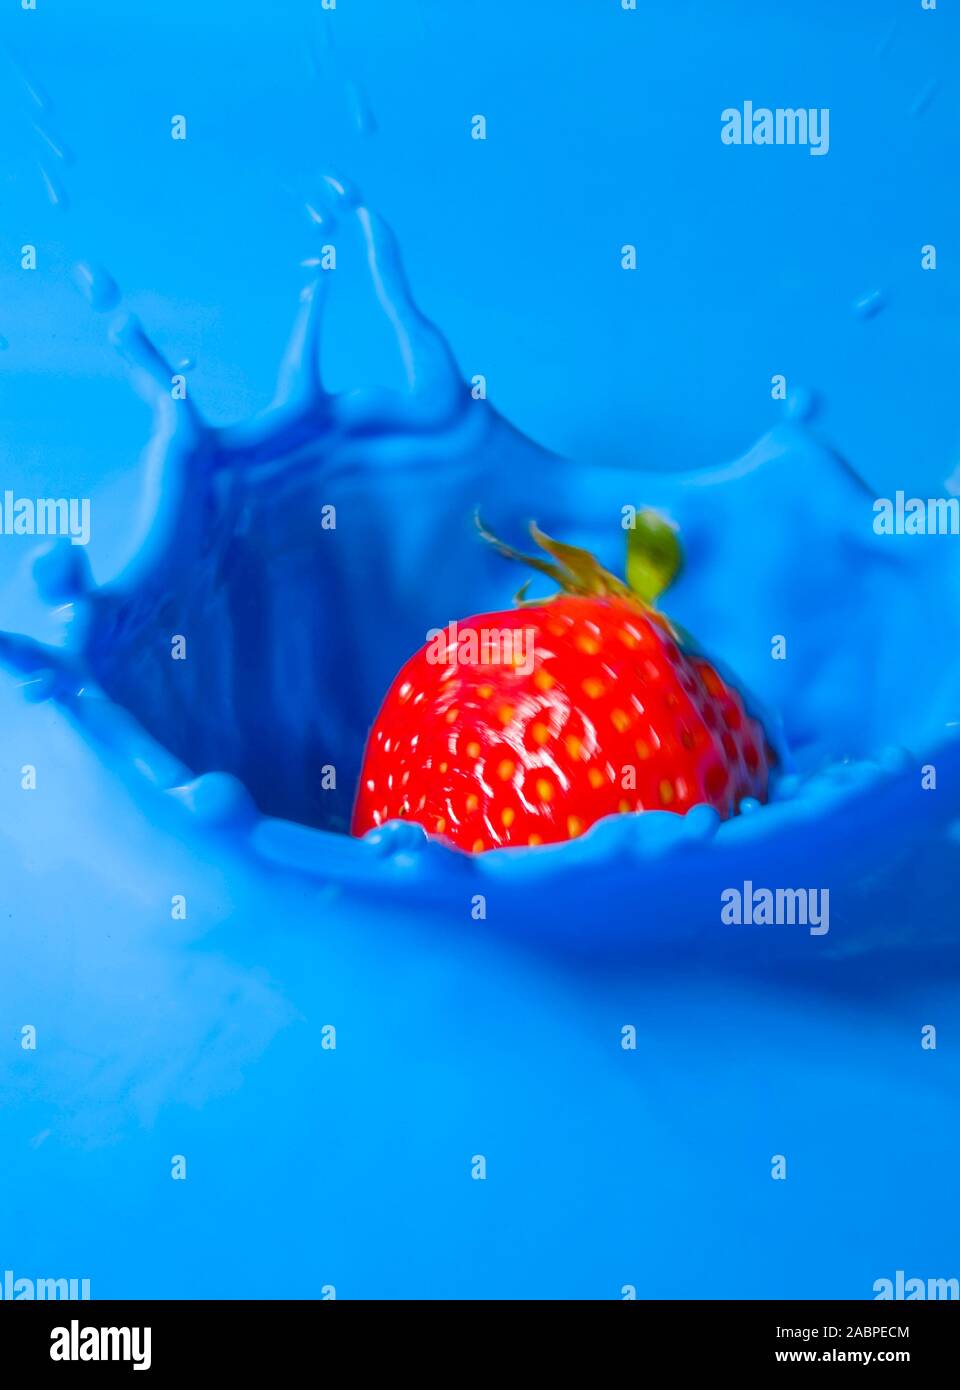 Erdbeere fällt in blaue Flüssigkeit Stock Photo